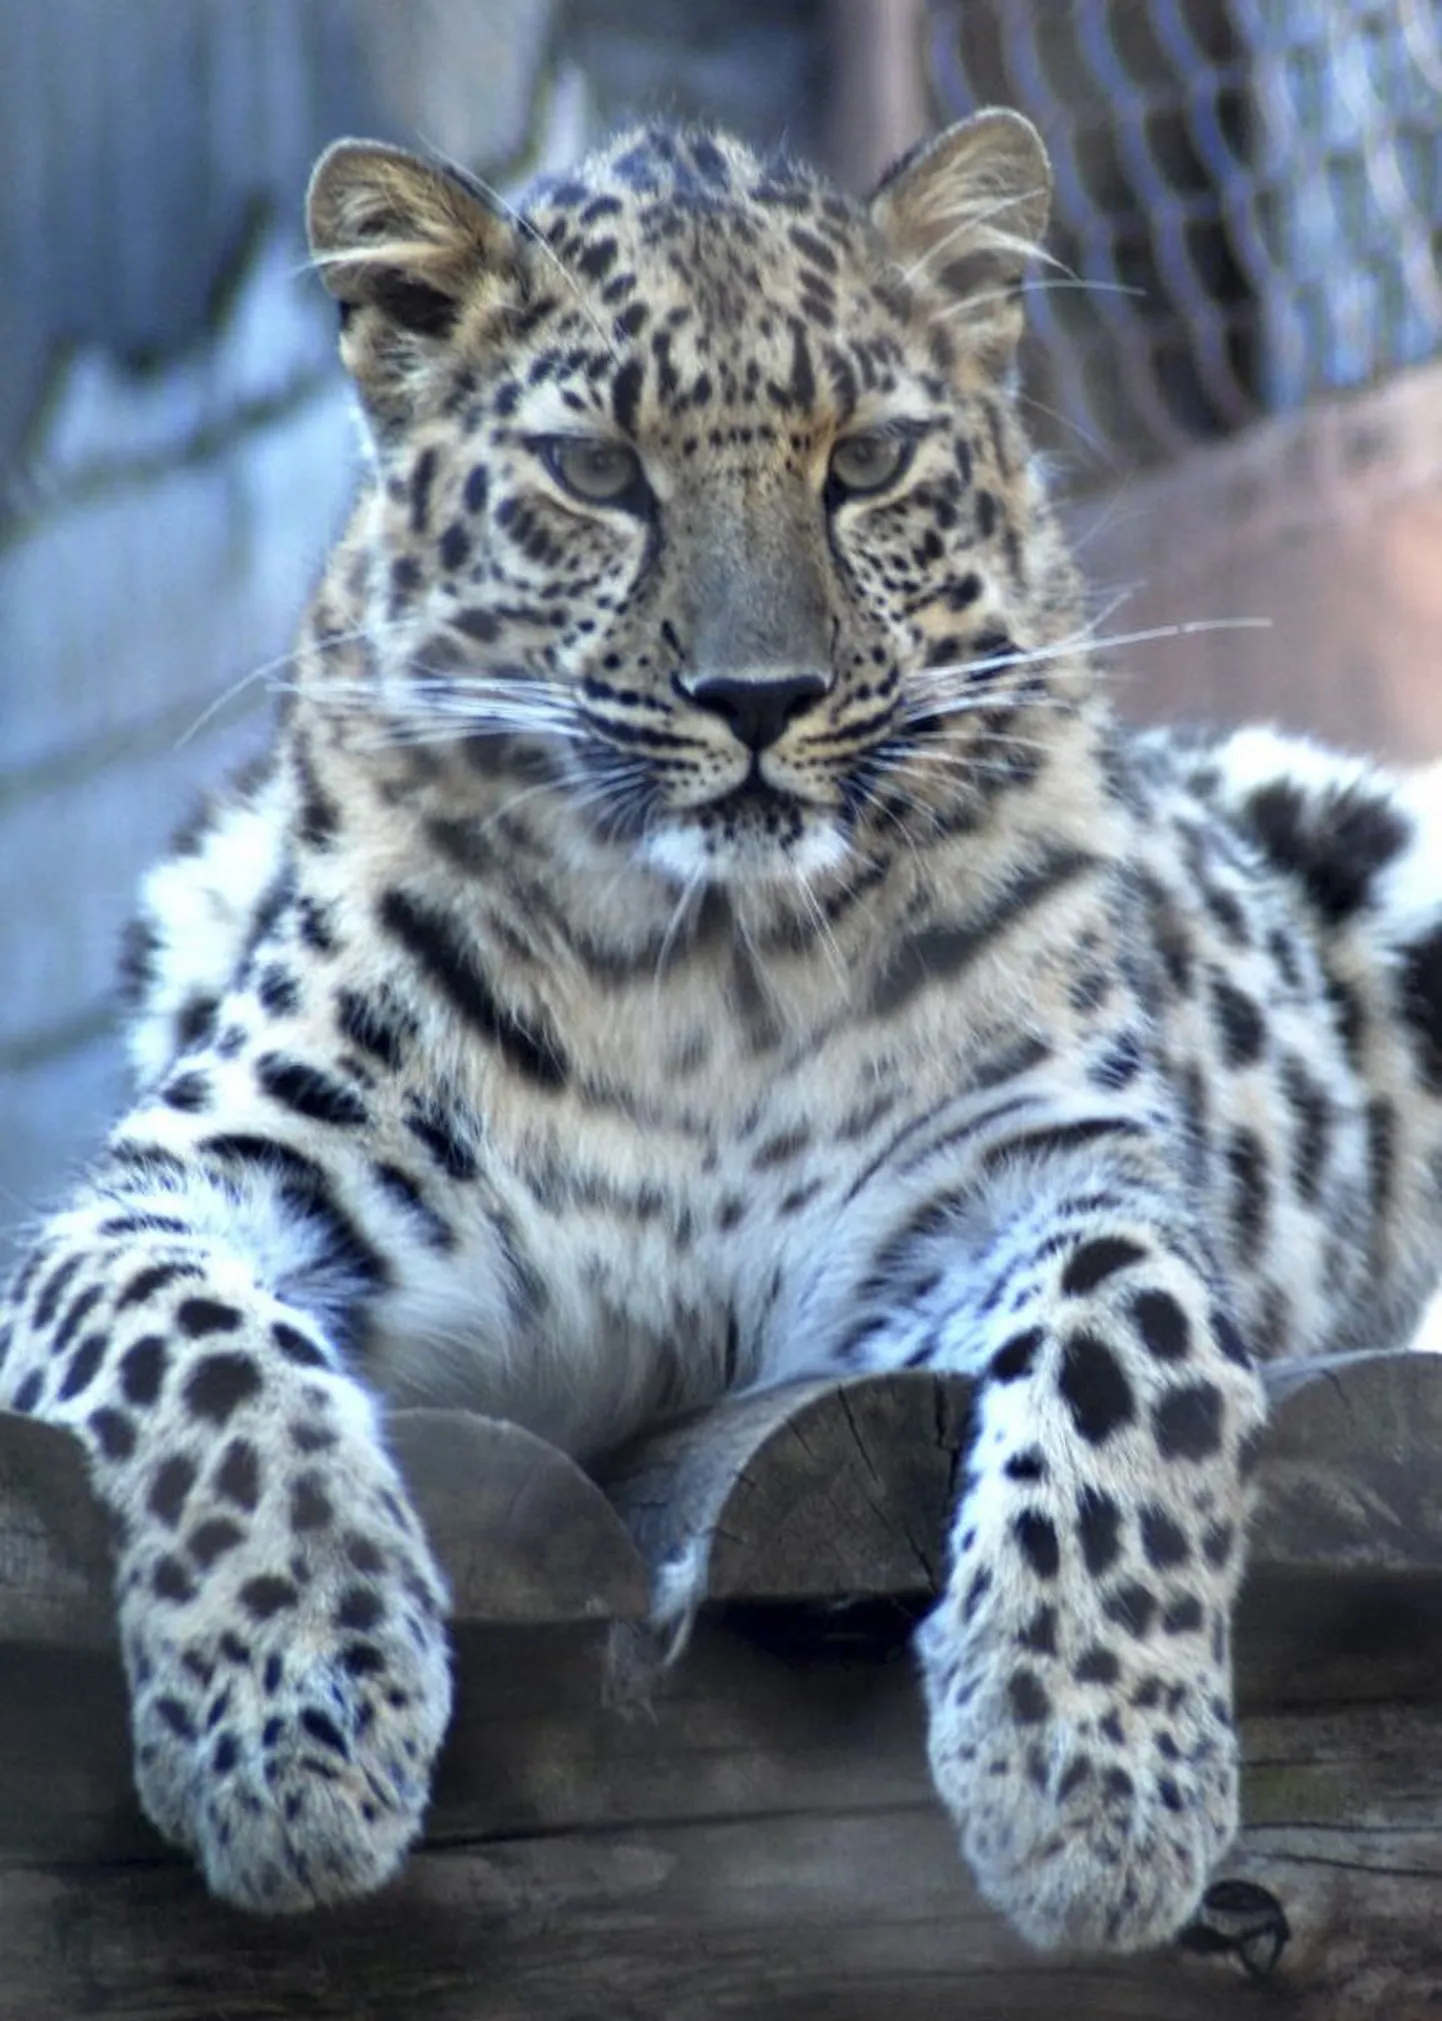 Kuna valgeamuur on Eesti vetes võõrliik, siis otsustati vallas eksootiliste loomaliikide kodustamisega jätkata. Selleks ostis vald Tallinna loomaaialt neli amuuri leopardi.